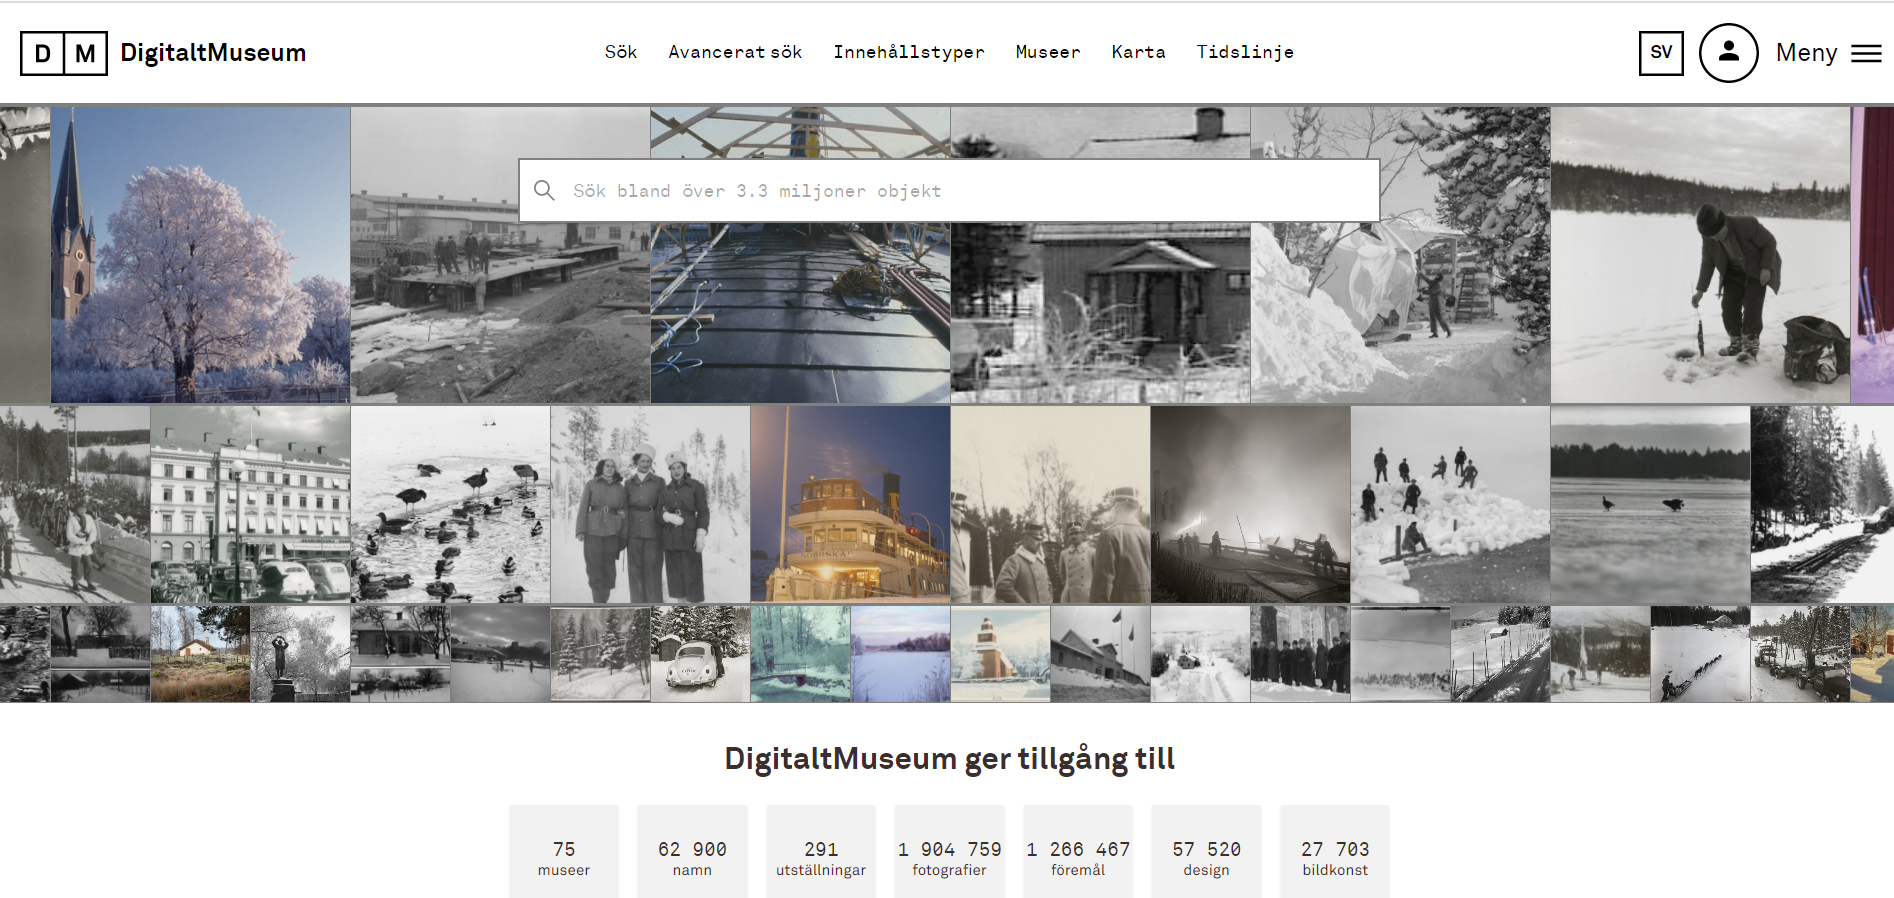 På webbsidan digitaltmuseum.se kan du redan i dag ta del av stora mängder digitaliserade vykort, fotografier och föremål från 75 museer. 